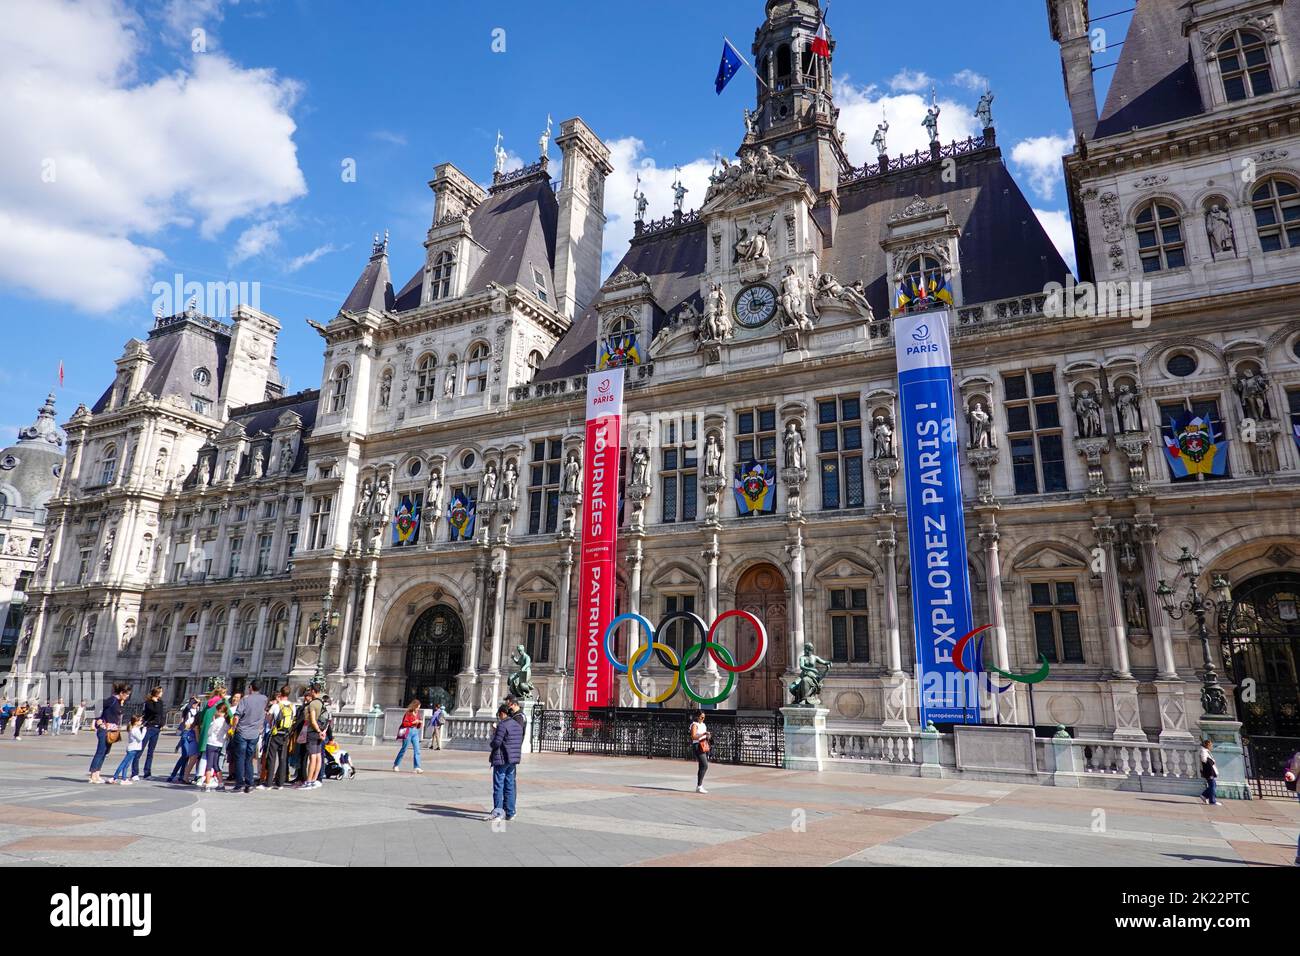 Personnes en face de l'Hôtel de ville, Hôtel de ville, pendant les Journées européennes du Patrimoine, Journées du Patrimoine 2022, Paris, France. Banque D'Images